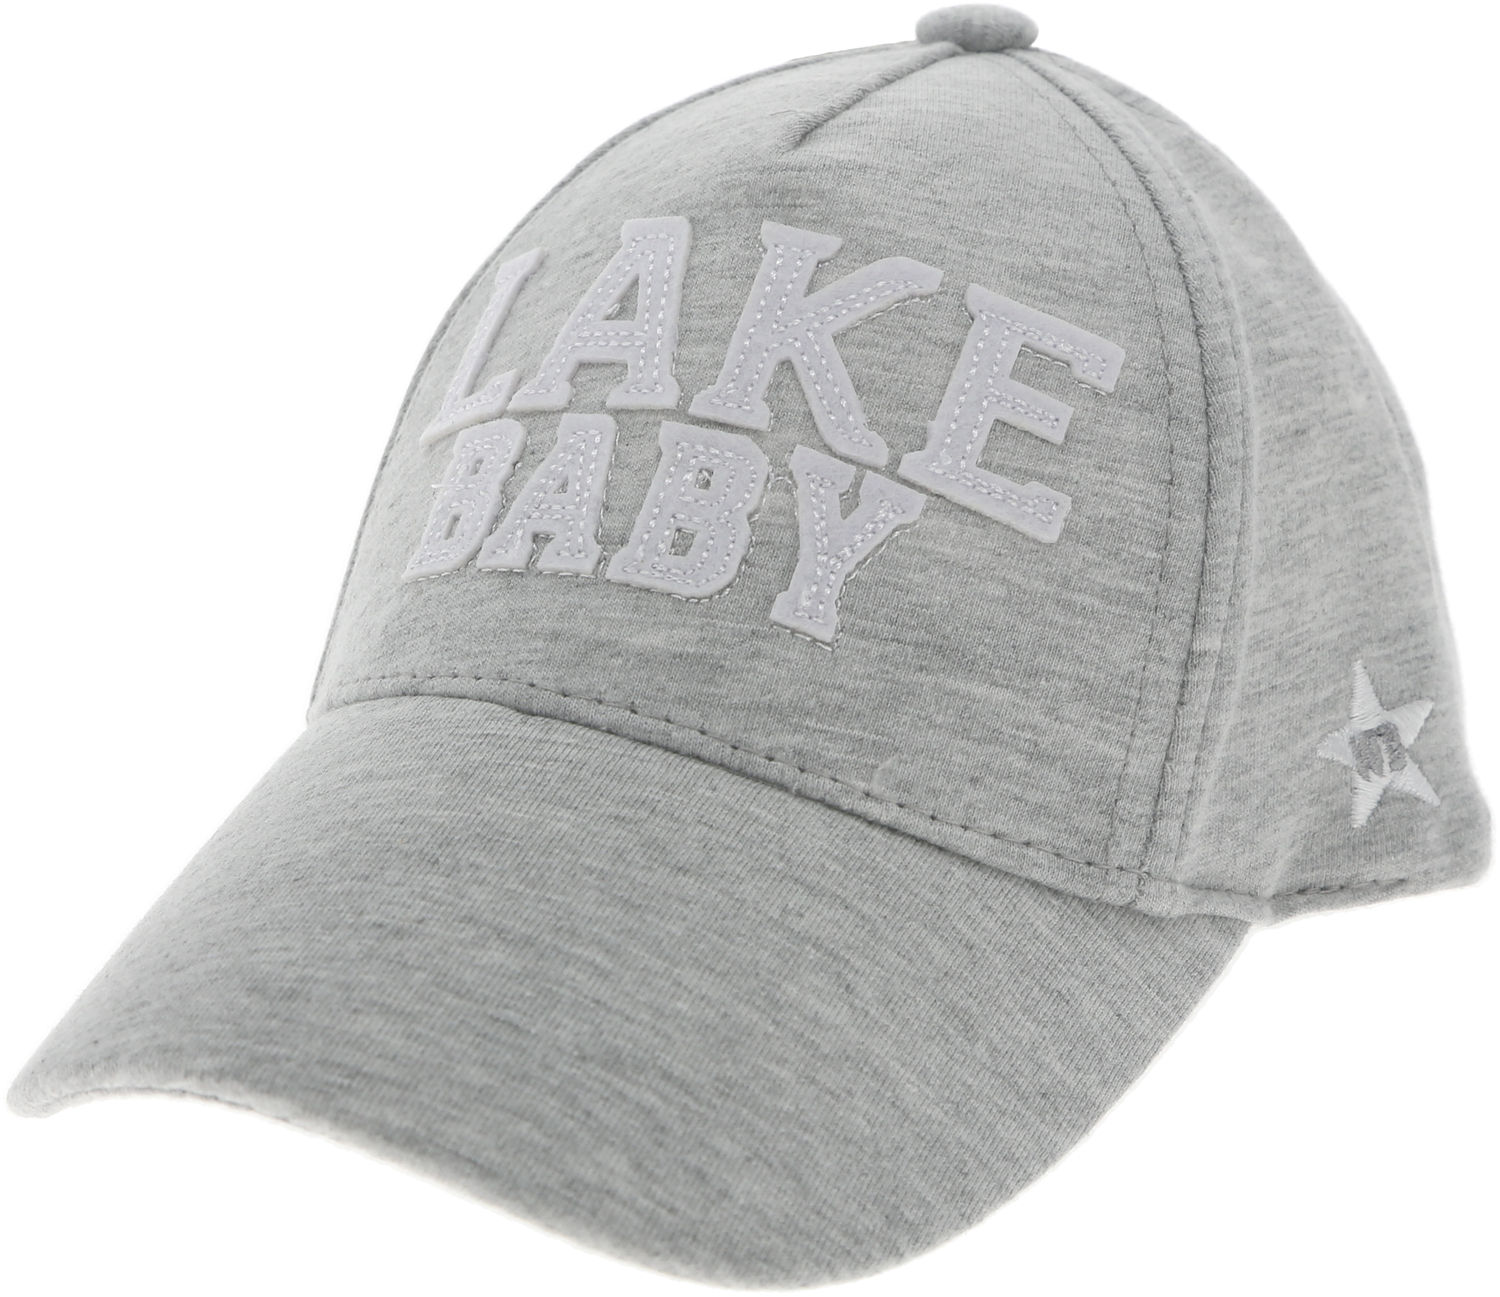 Lake by We Baby - Lake - Adjustable Toddler Hat
(0-12 Months)